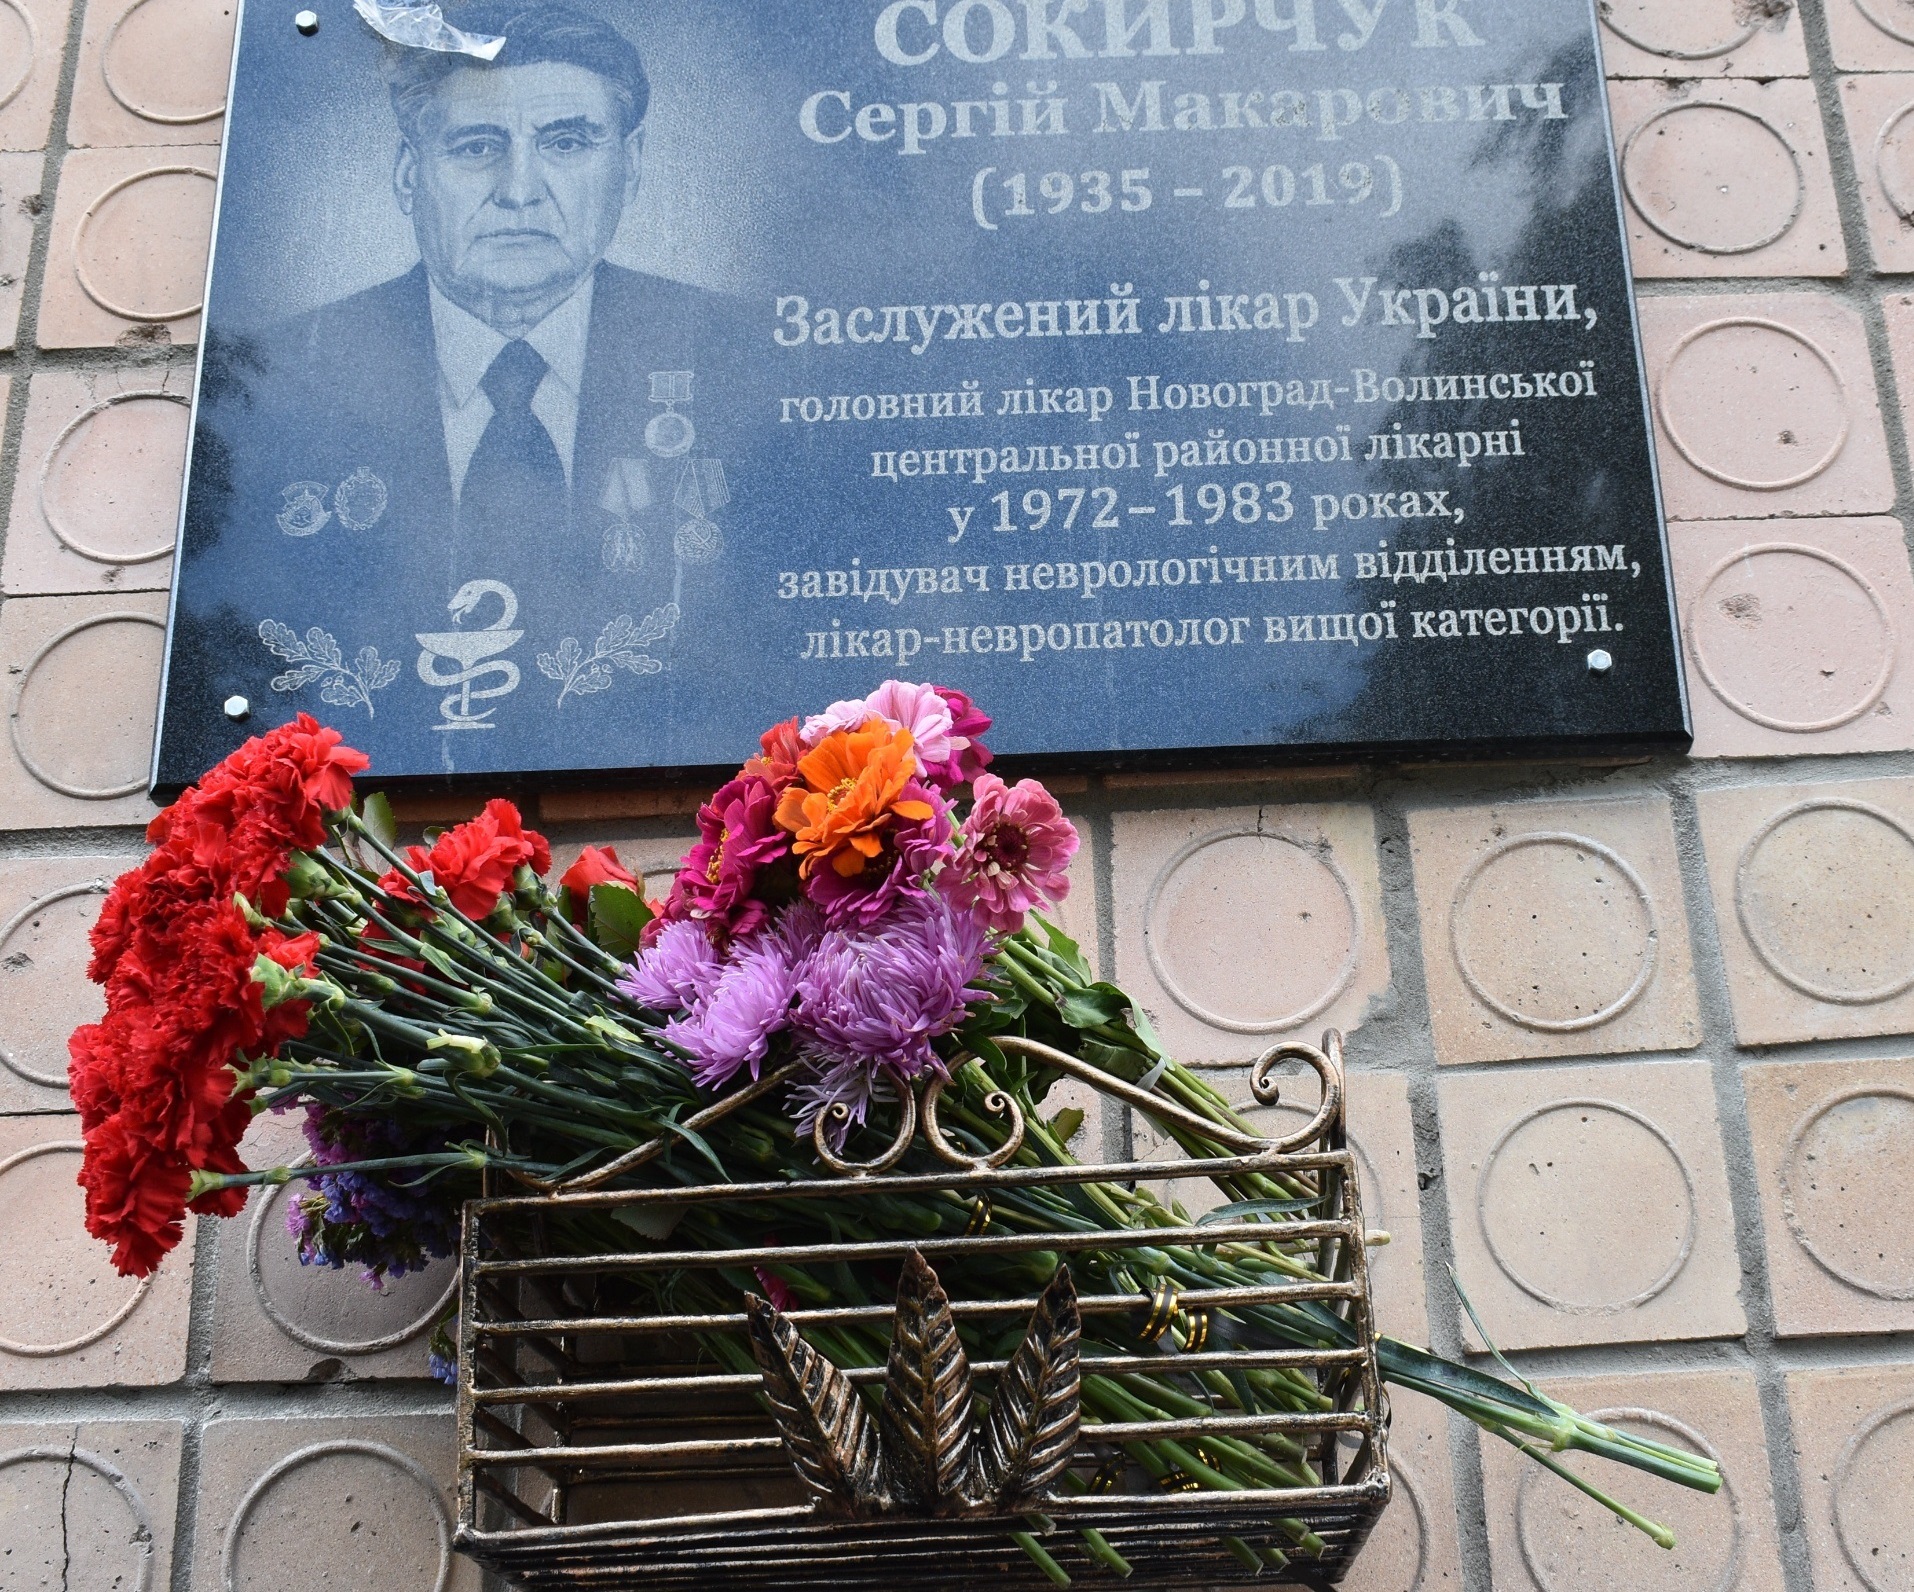 Відкрито меморіальну дошку заслуженому лікарю України Сергію Макаровичу Сокирчуку